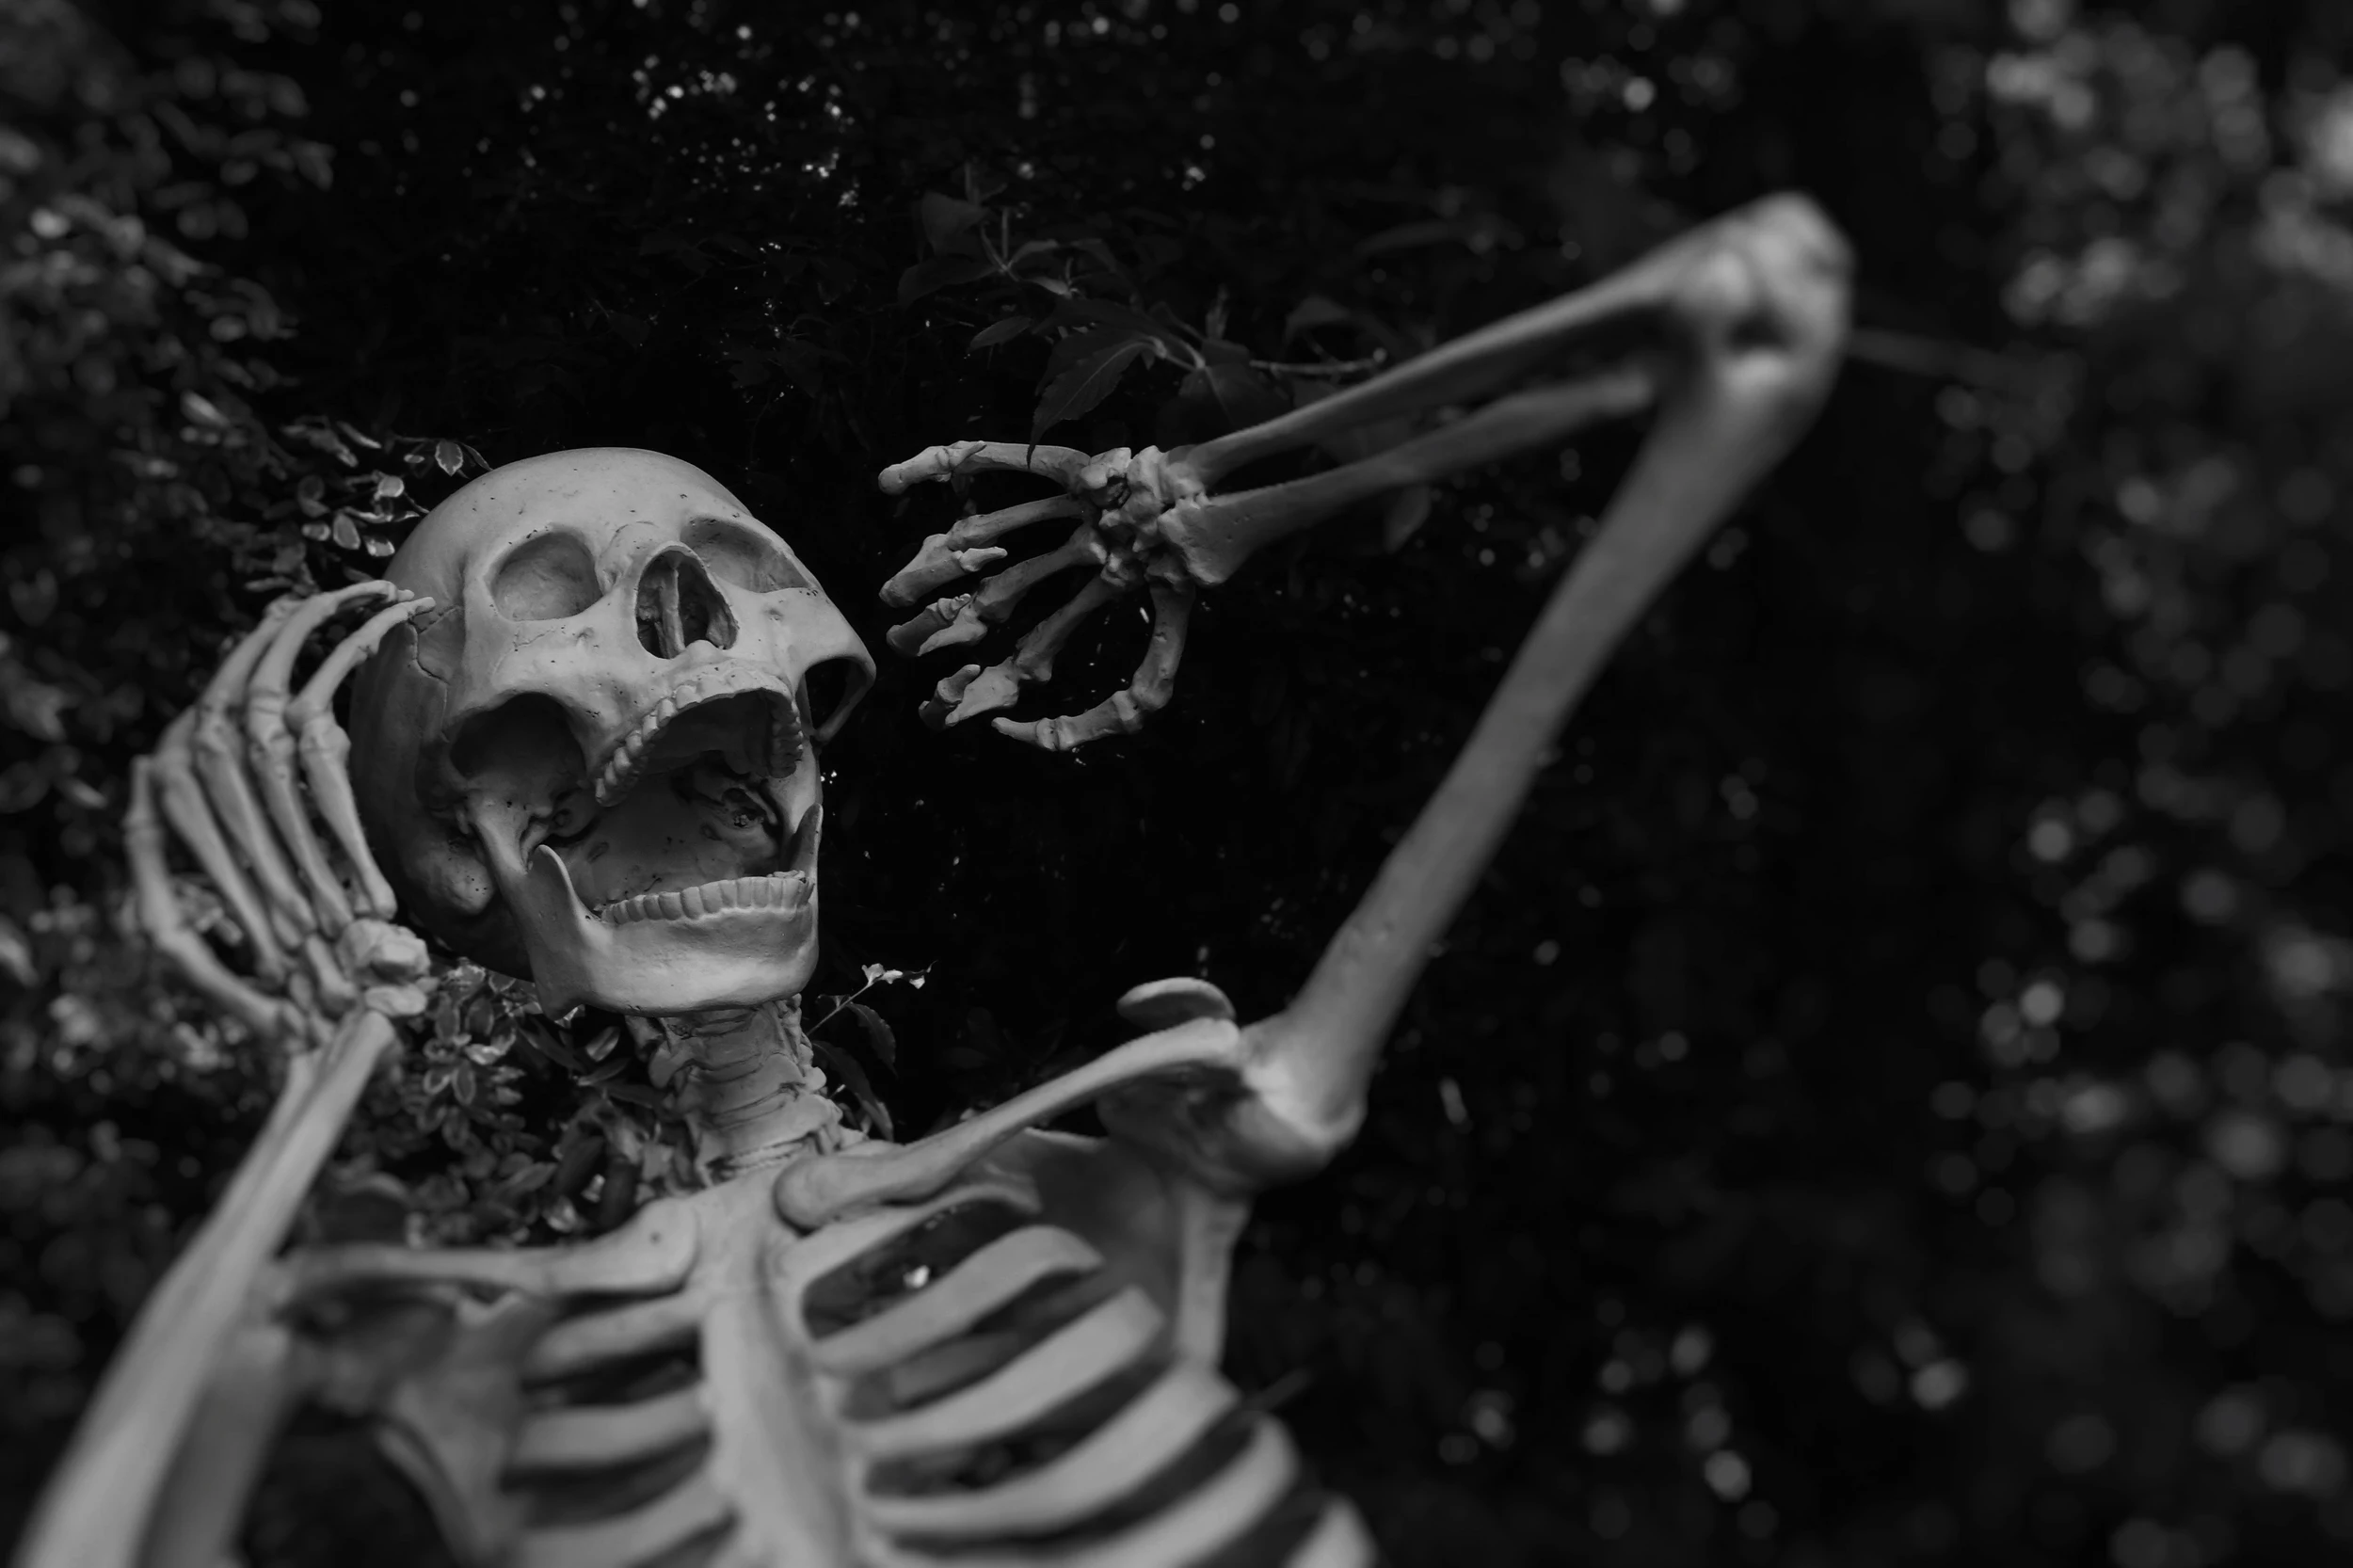 Utah Grizzlies celebrate Halloween in skeleton style —